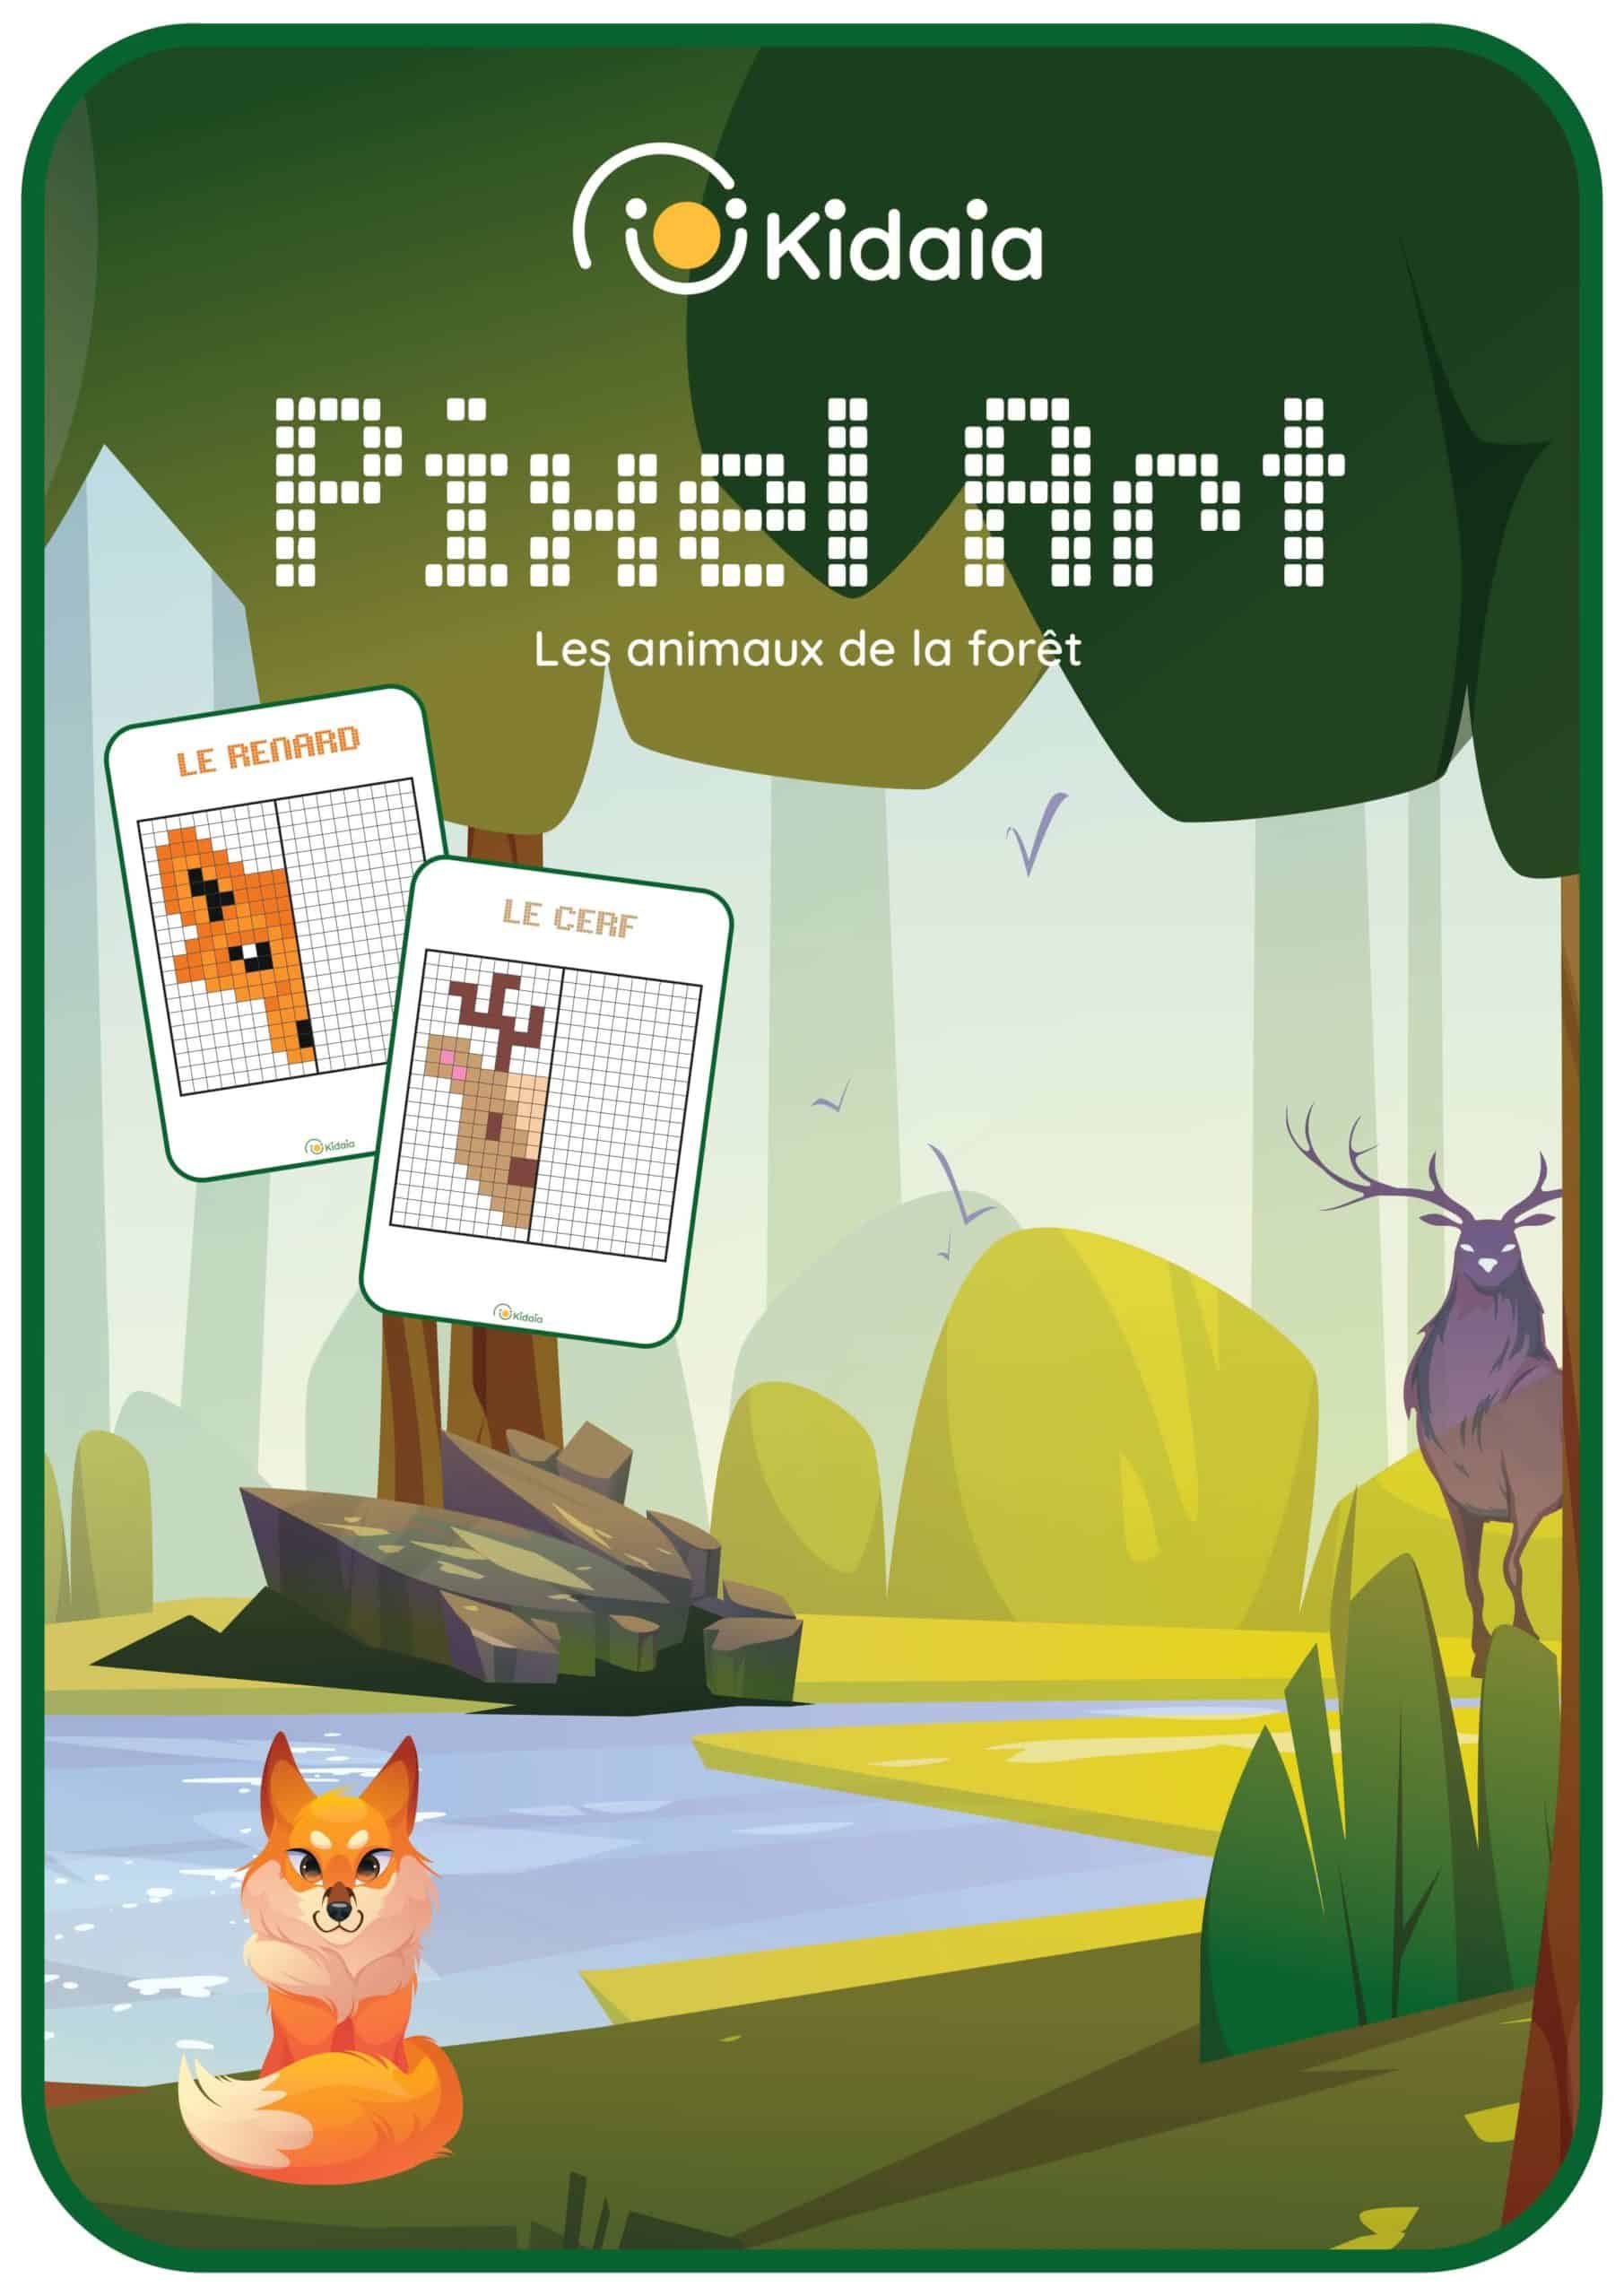 Couverture de notre livret de pixels arts sur les animaux de la forêt, comportant un renard, un hibou, un ours, un hérisson, un cerf, un lapin, un sanglier, une grenouille, un écureuil et un loup.